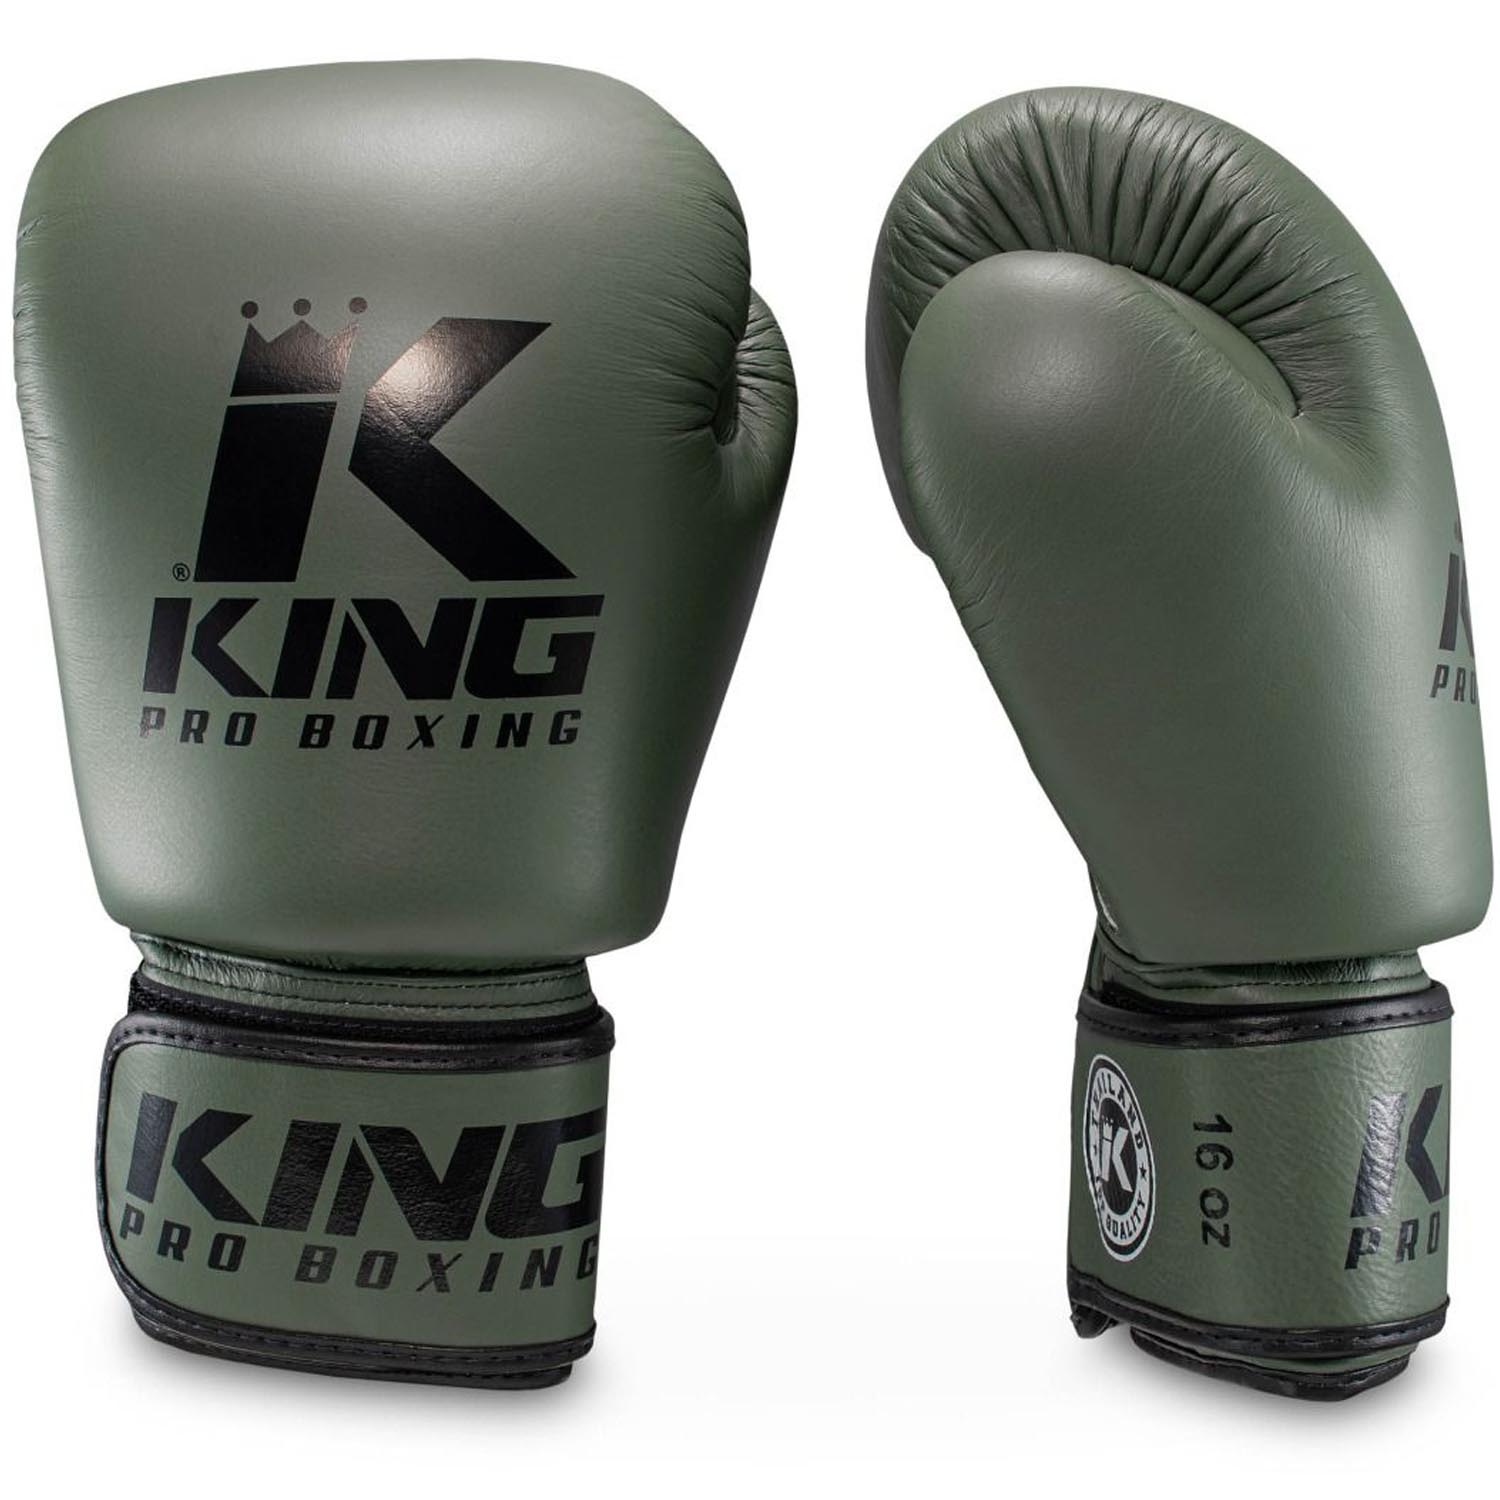 KING PRO BOXING Boxing Gloves, BGVL3, military-kahki, 14 Oz